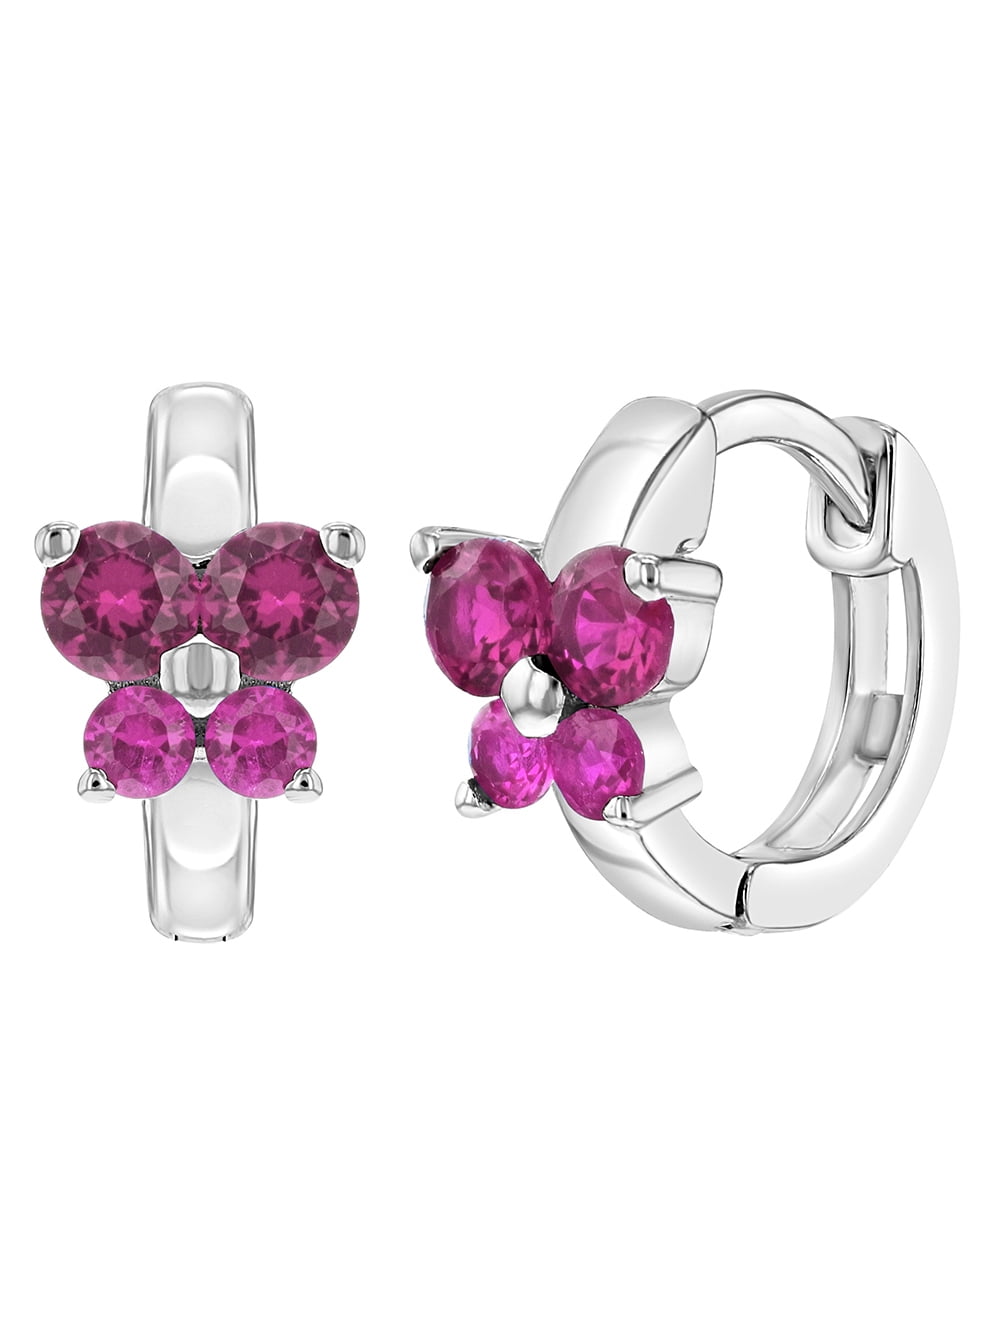 925 Sterling Silver Pink CZ Butterfly Huggie Hoop Earrings for Girls or Teens